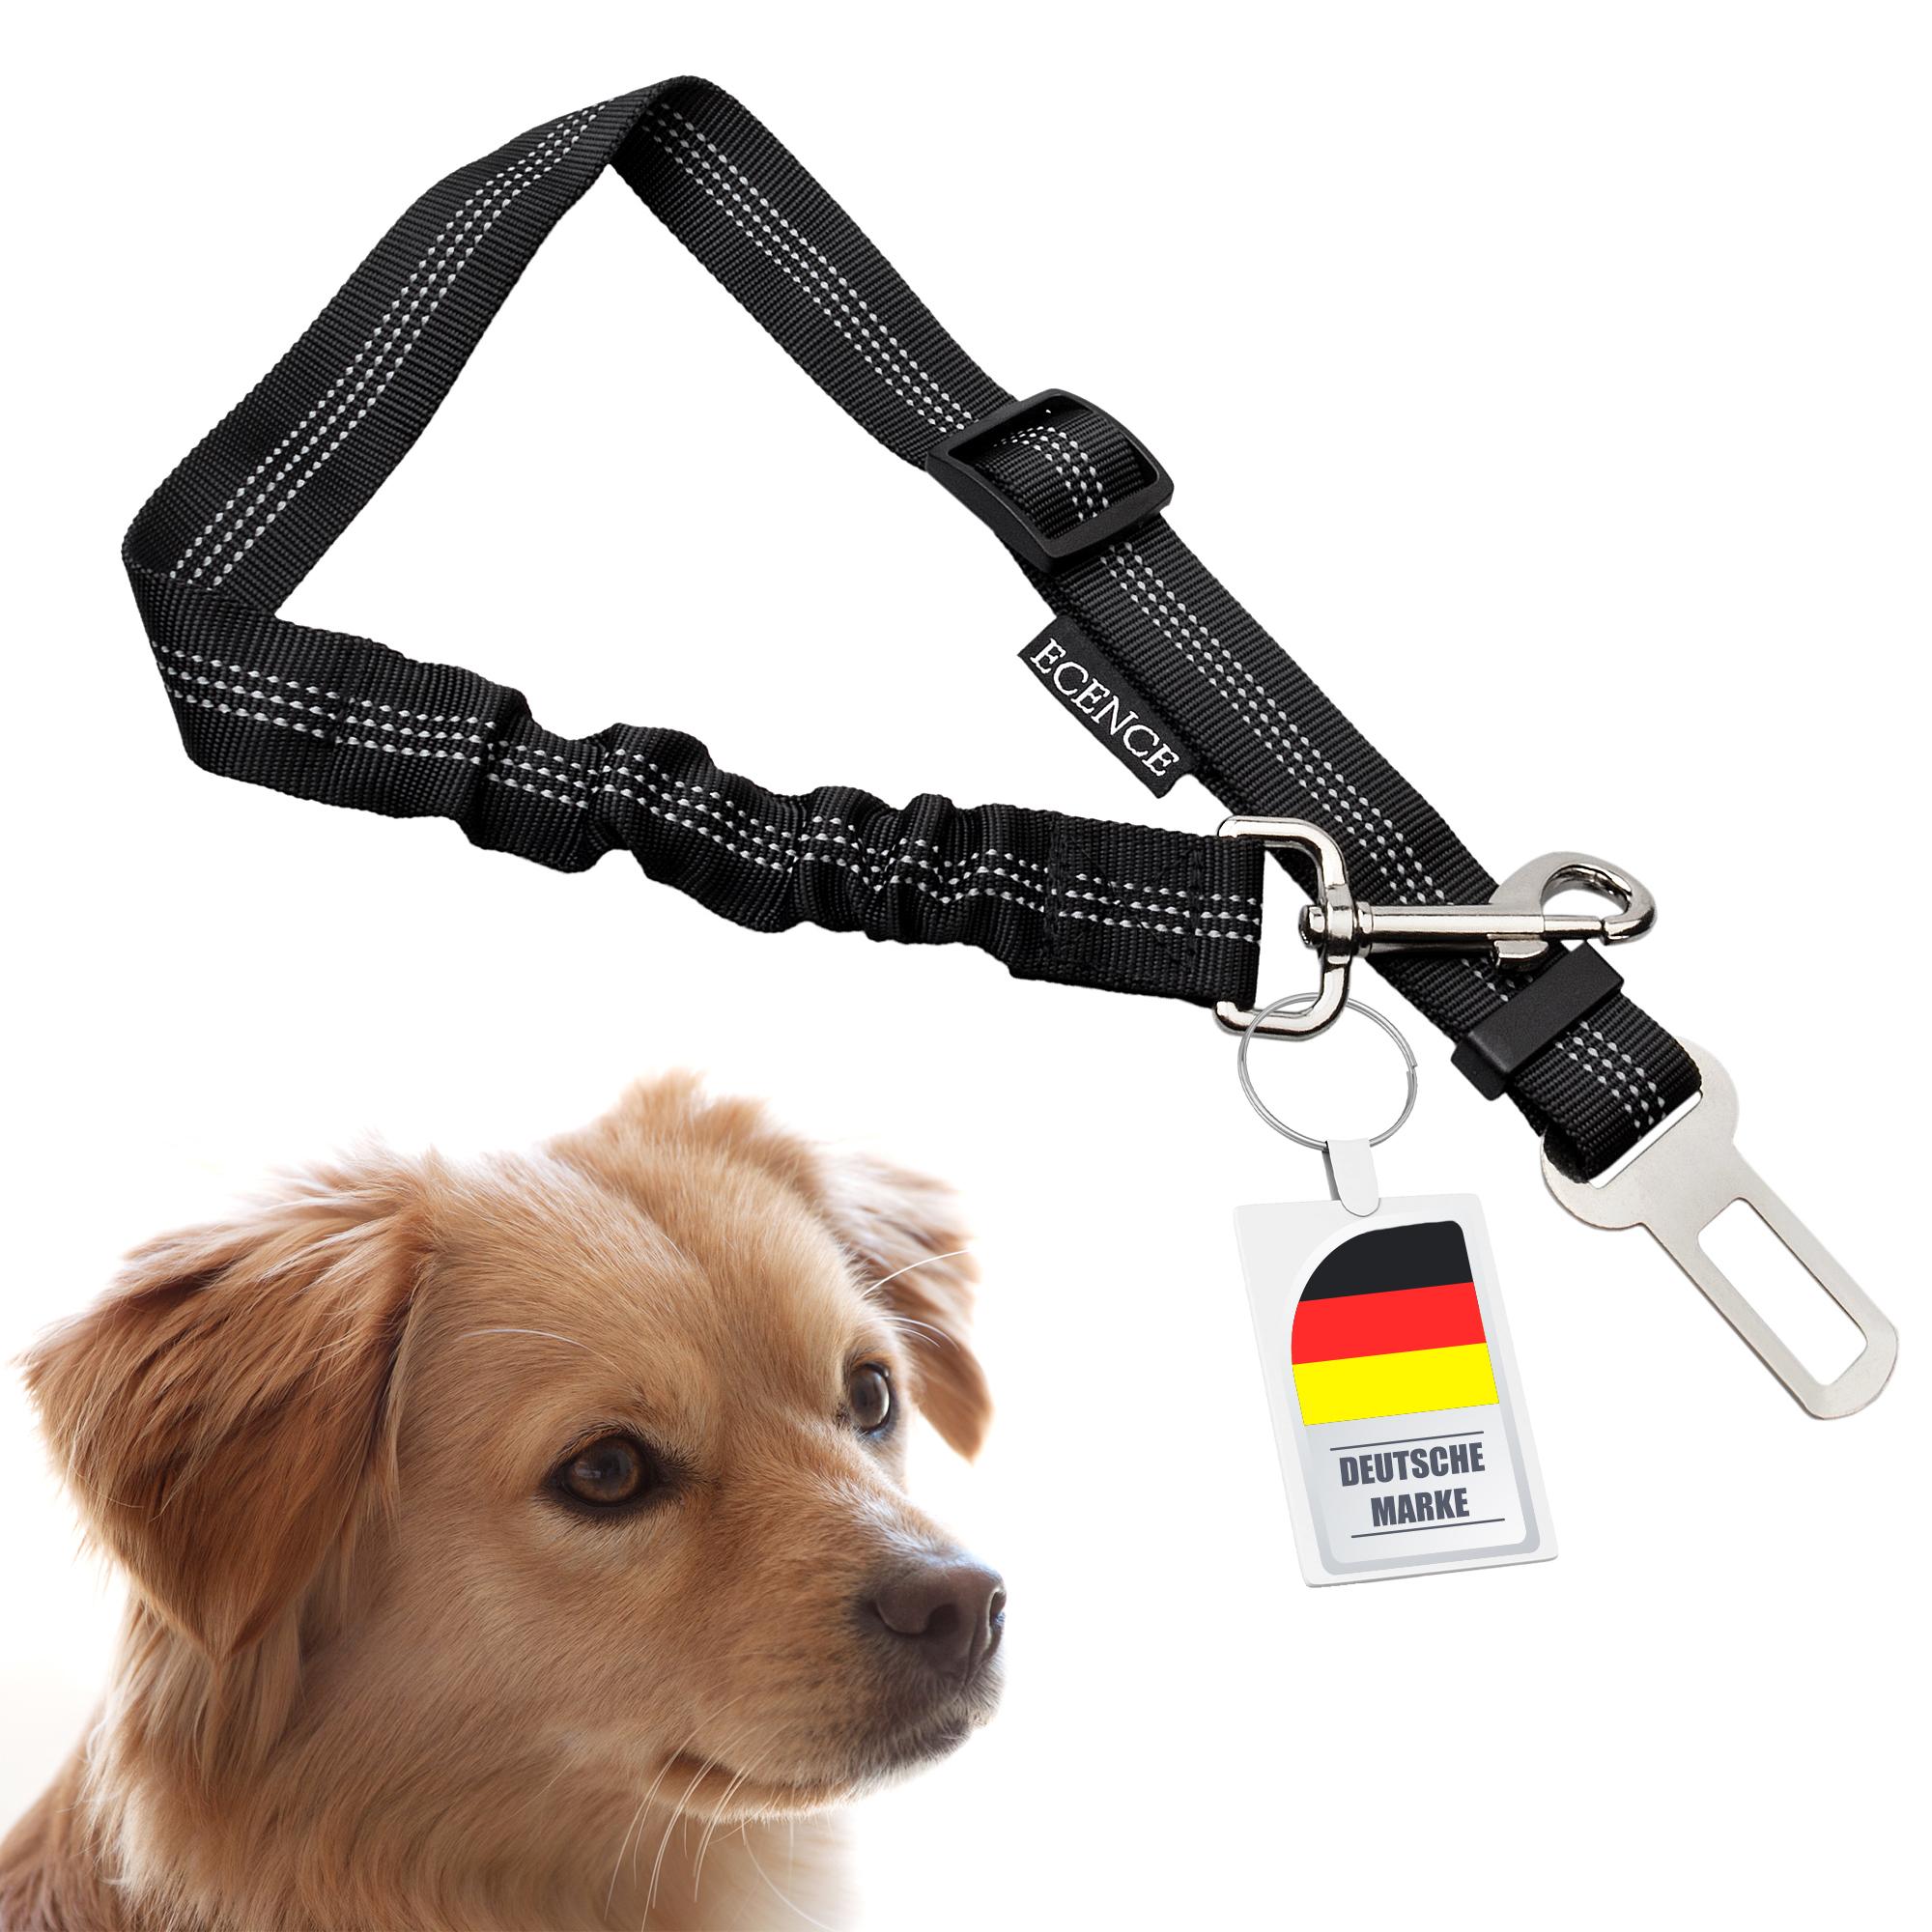 1x Hunde-Gurt Auto Anschnallgurt Hund Sicherheitsgurt Hundegeschirr  elastisch